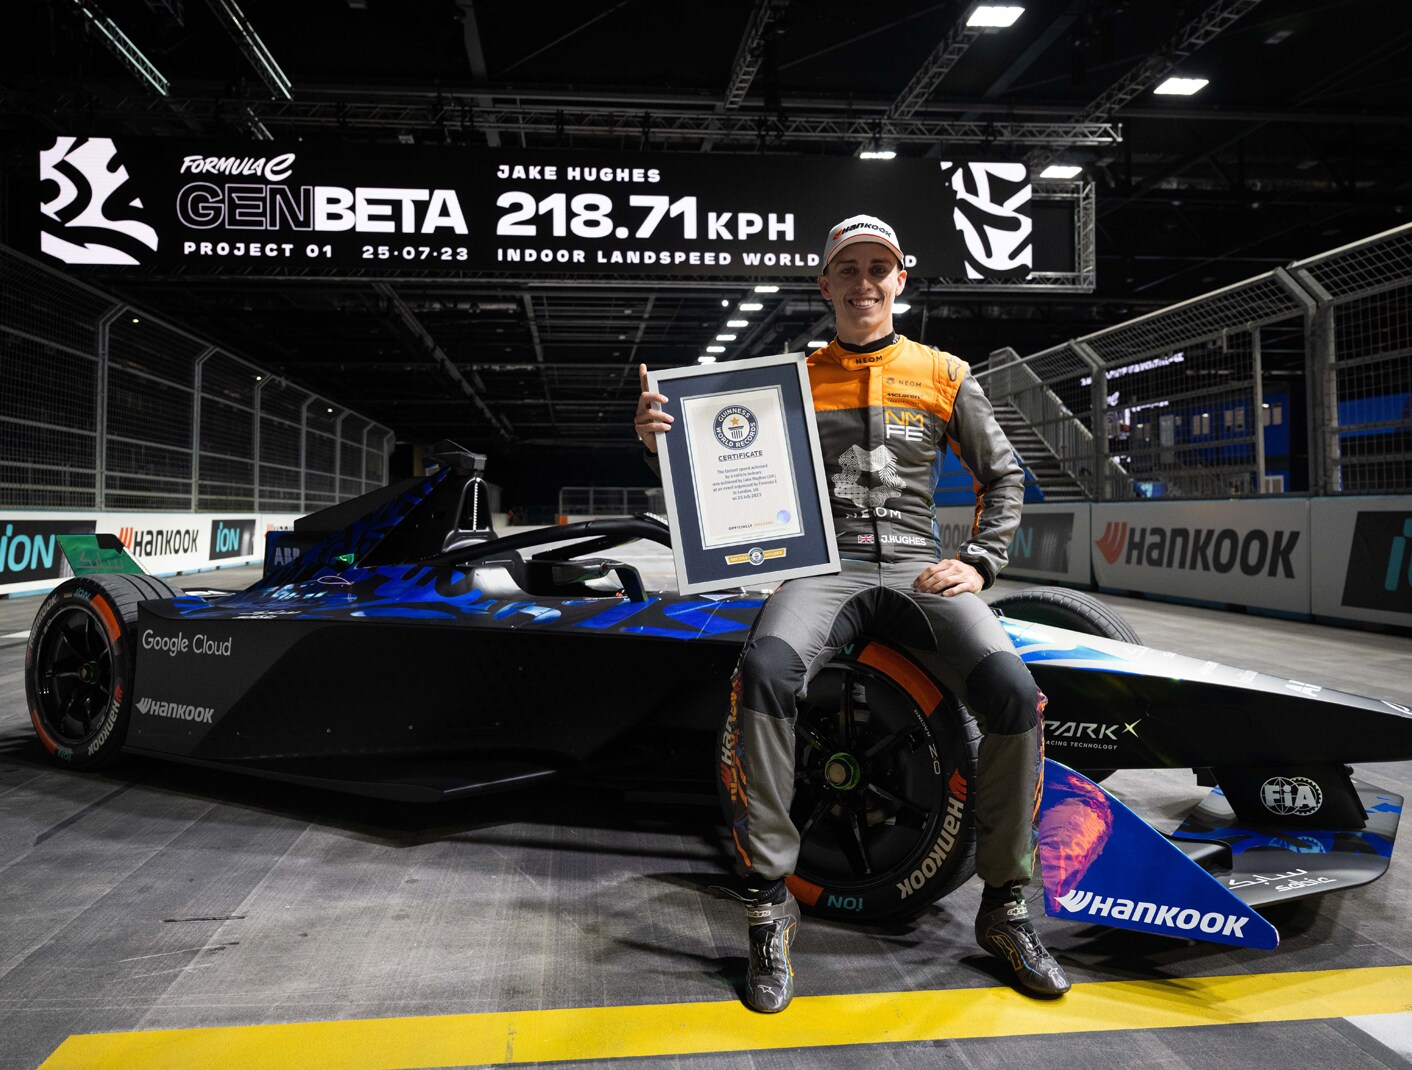 Masuk di Guinness Book of Records, Formula E Memecahkan Rekor Kecepatan dengan Ban Hankook 